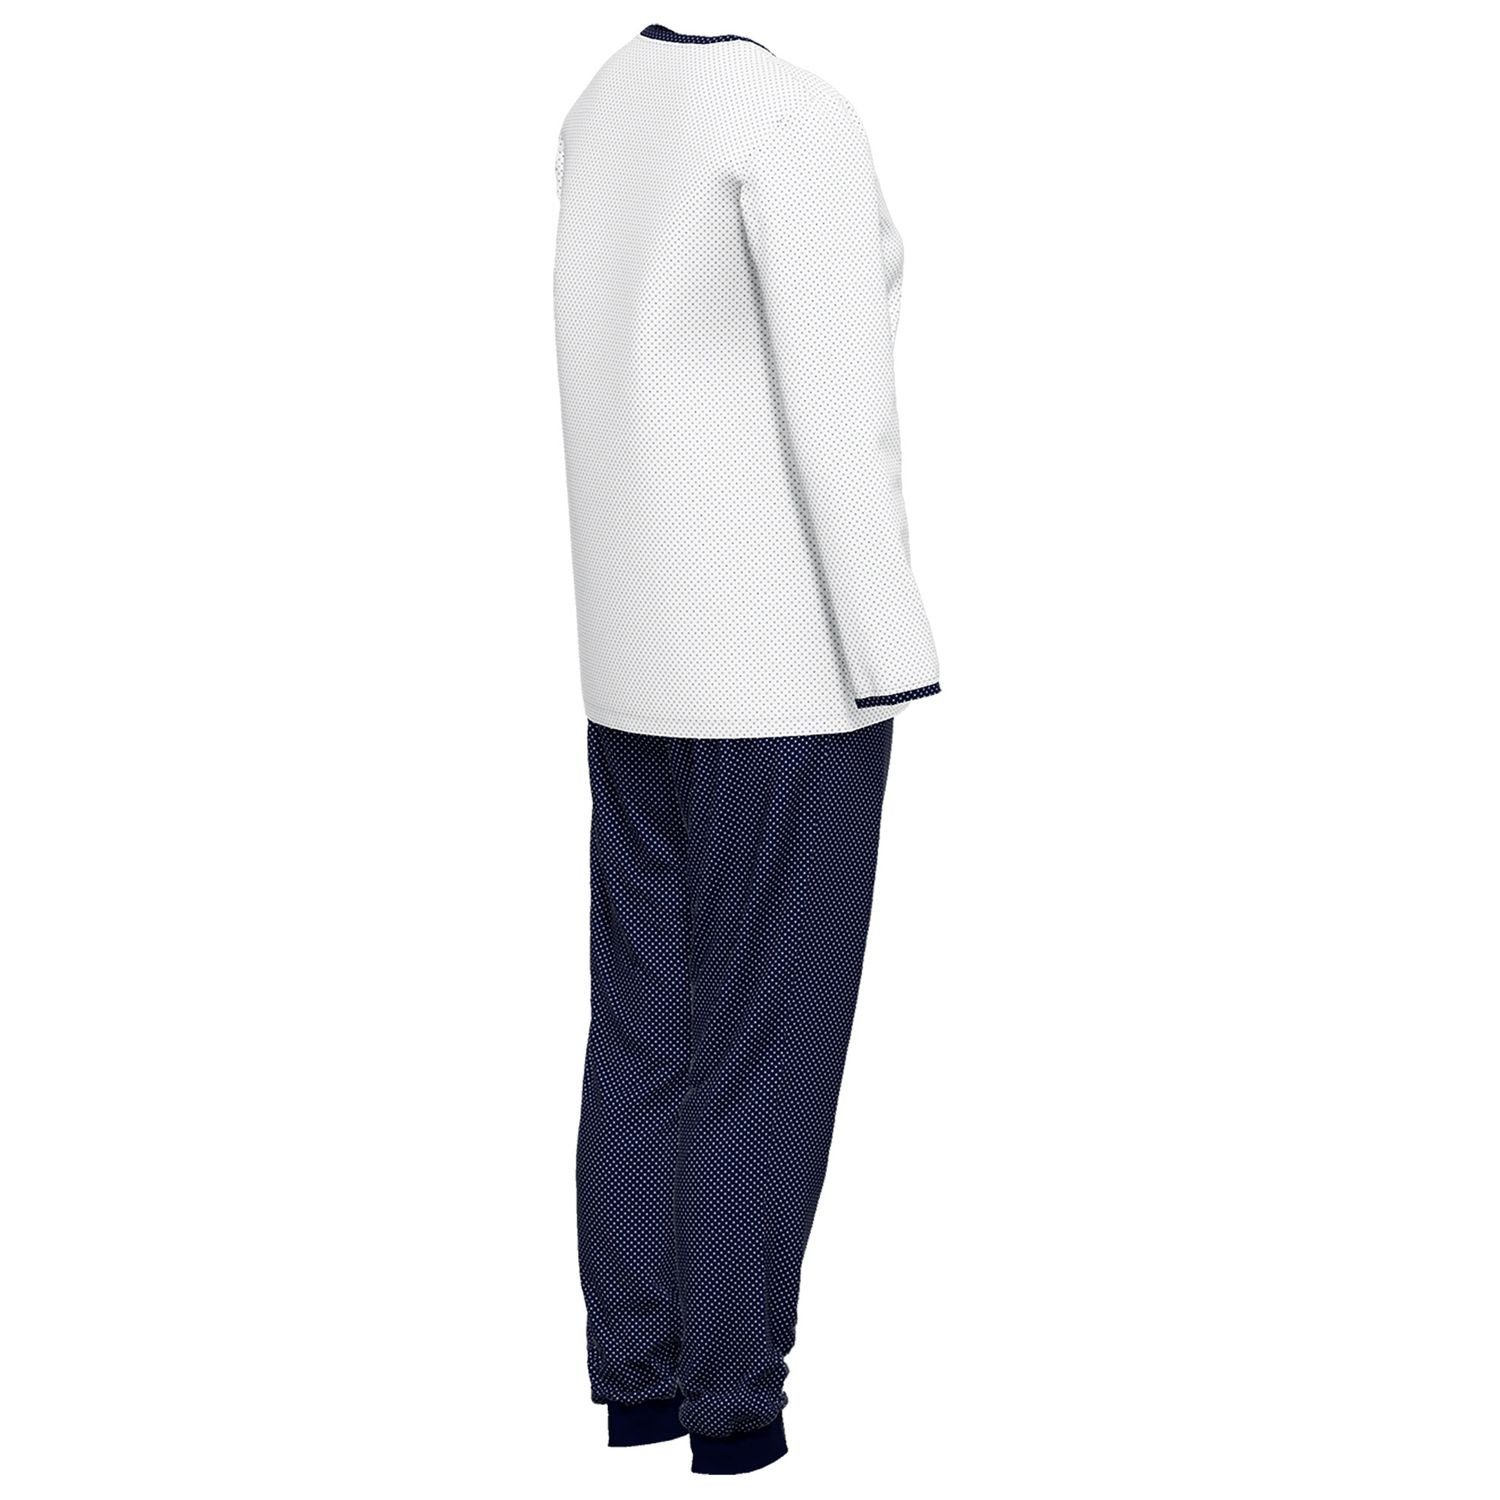 GÖTZBURG navy Baumolle weich, Henley-Auschnitt, gepunktet mit langarm, Knöpfe, Schlafanzug reine bequem, / weiß